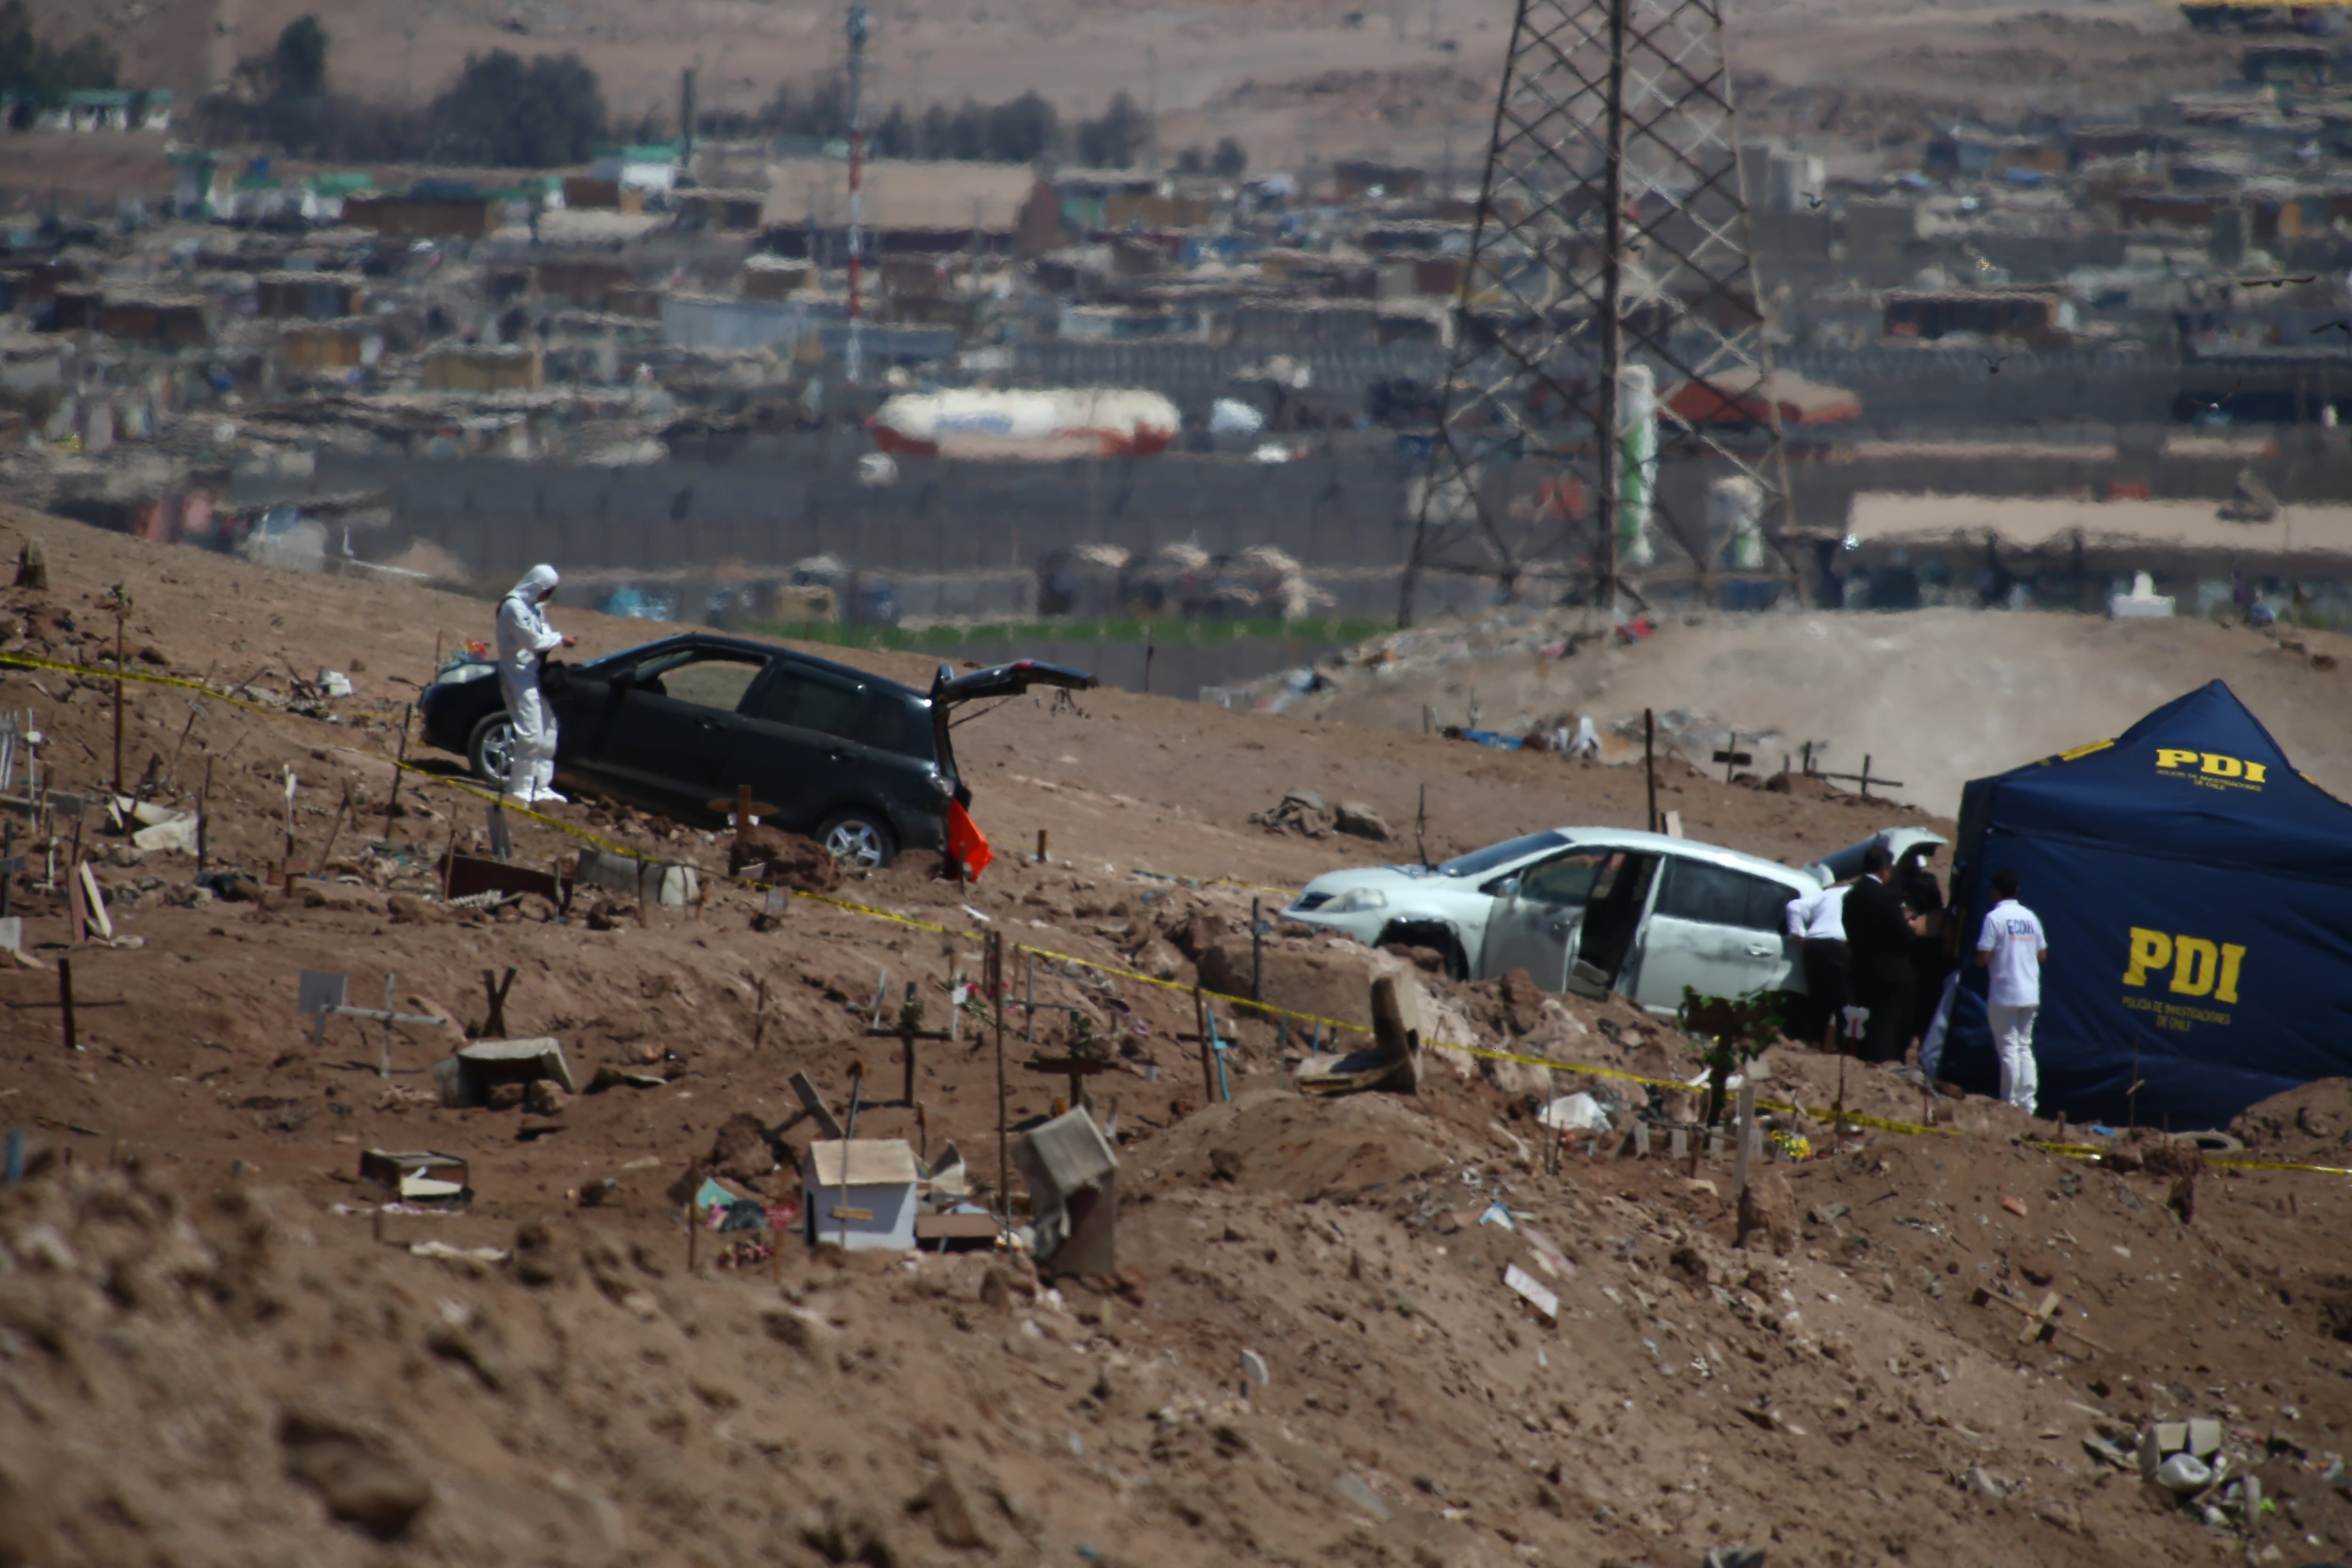 Agentes de la PDI examinan un vehículo donde se encontraron tres personas muertas, crimen con posible relación con el Tren de Aragua, en Altro Hospicio (Chile),el 3 de abril. 